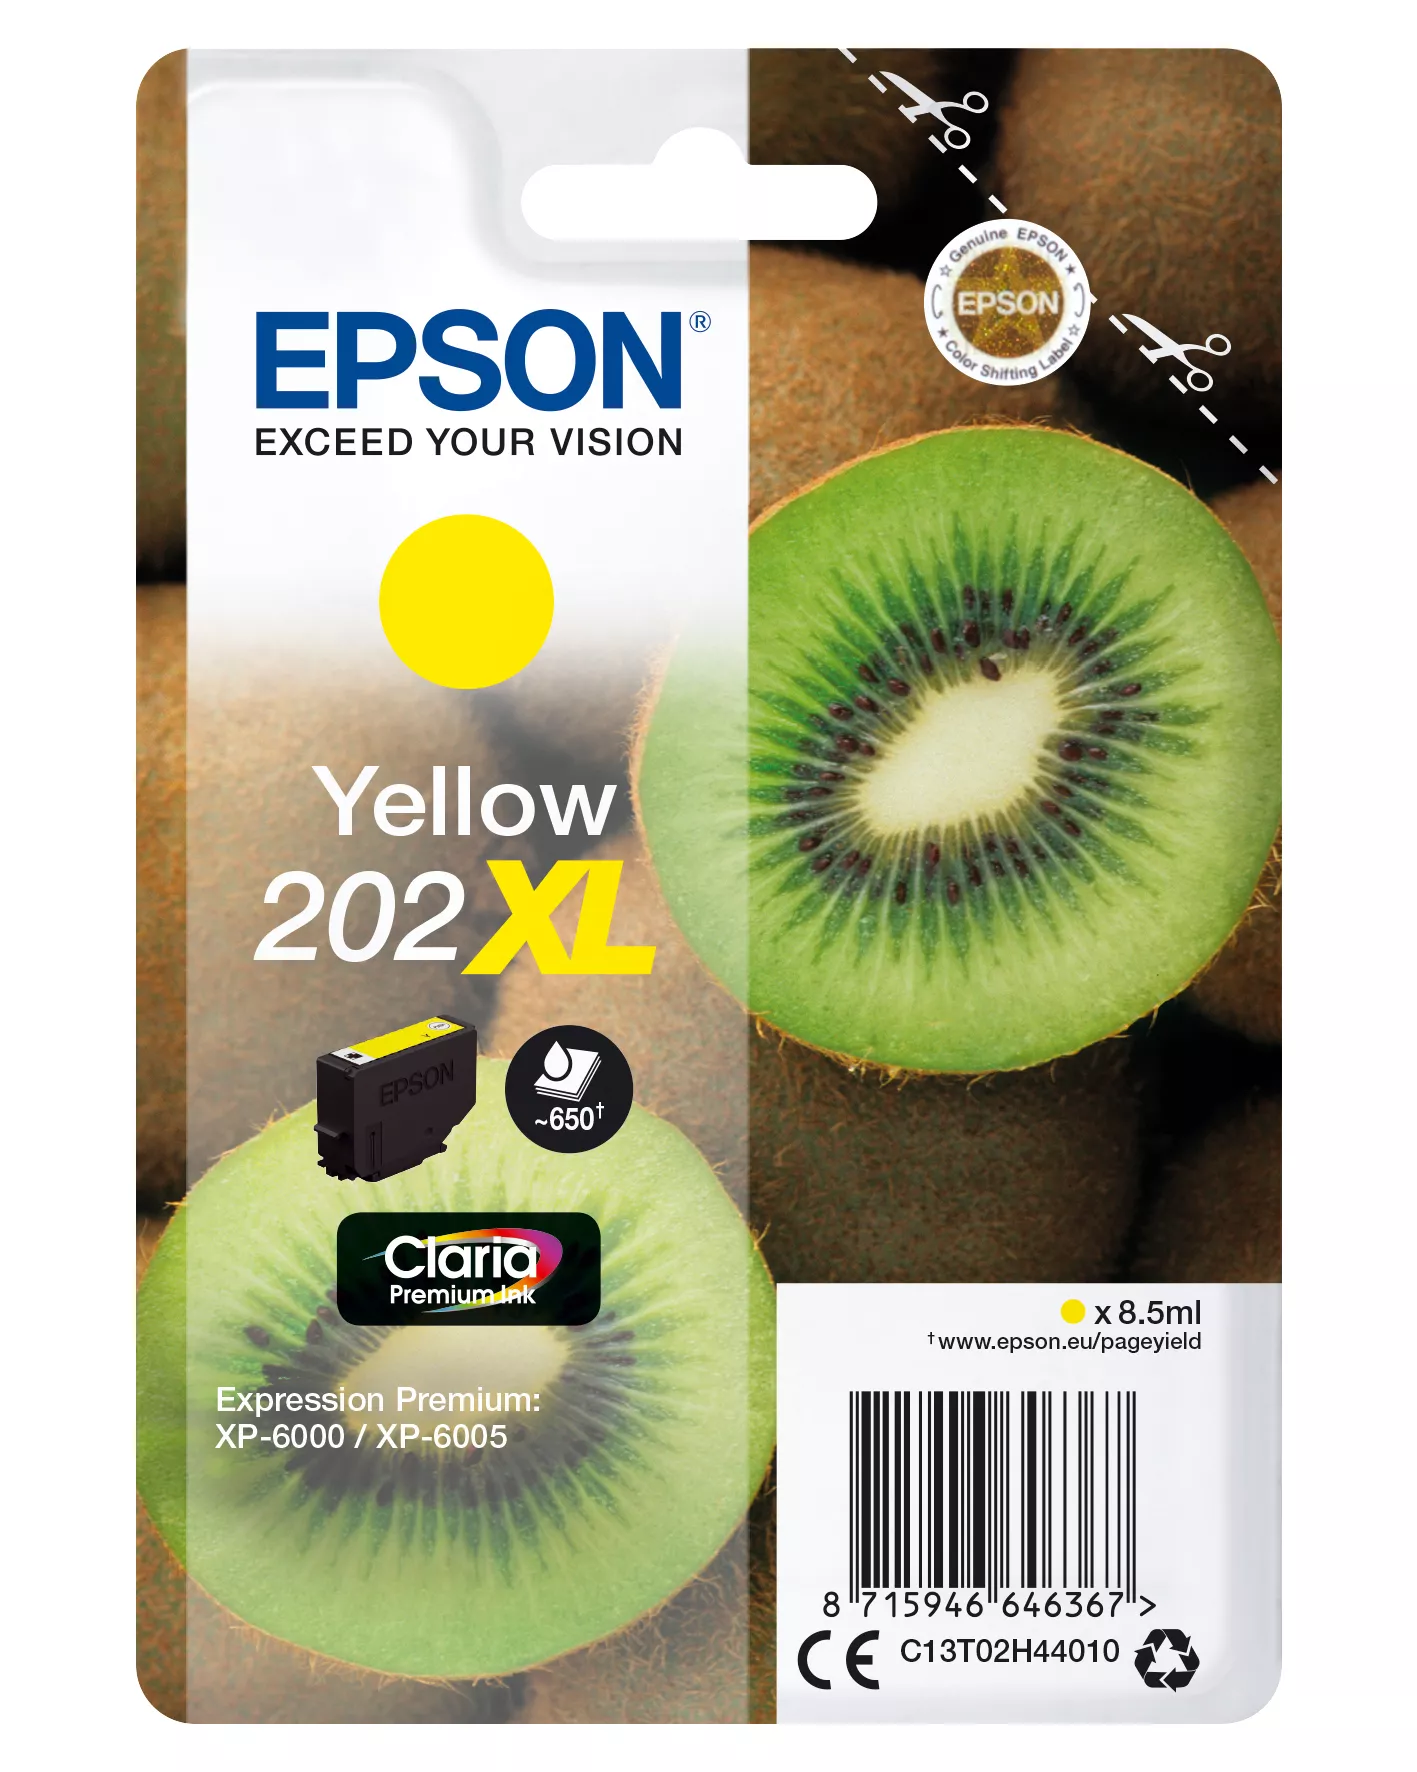 Achat Epson Kiwi Singlepack Yellow 202XL Claria Premium Ink - 8715946646374